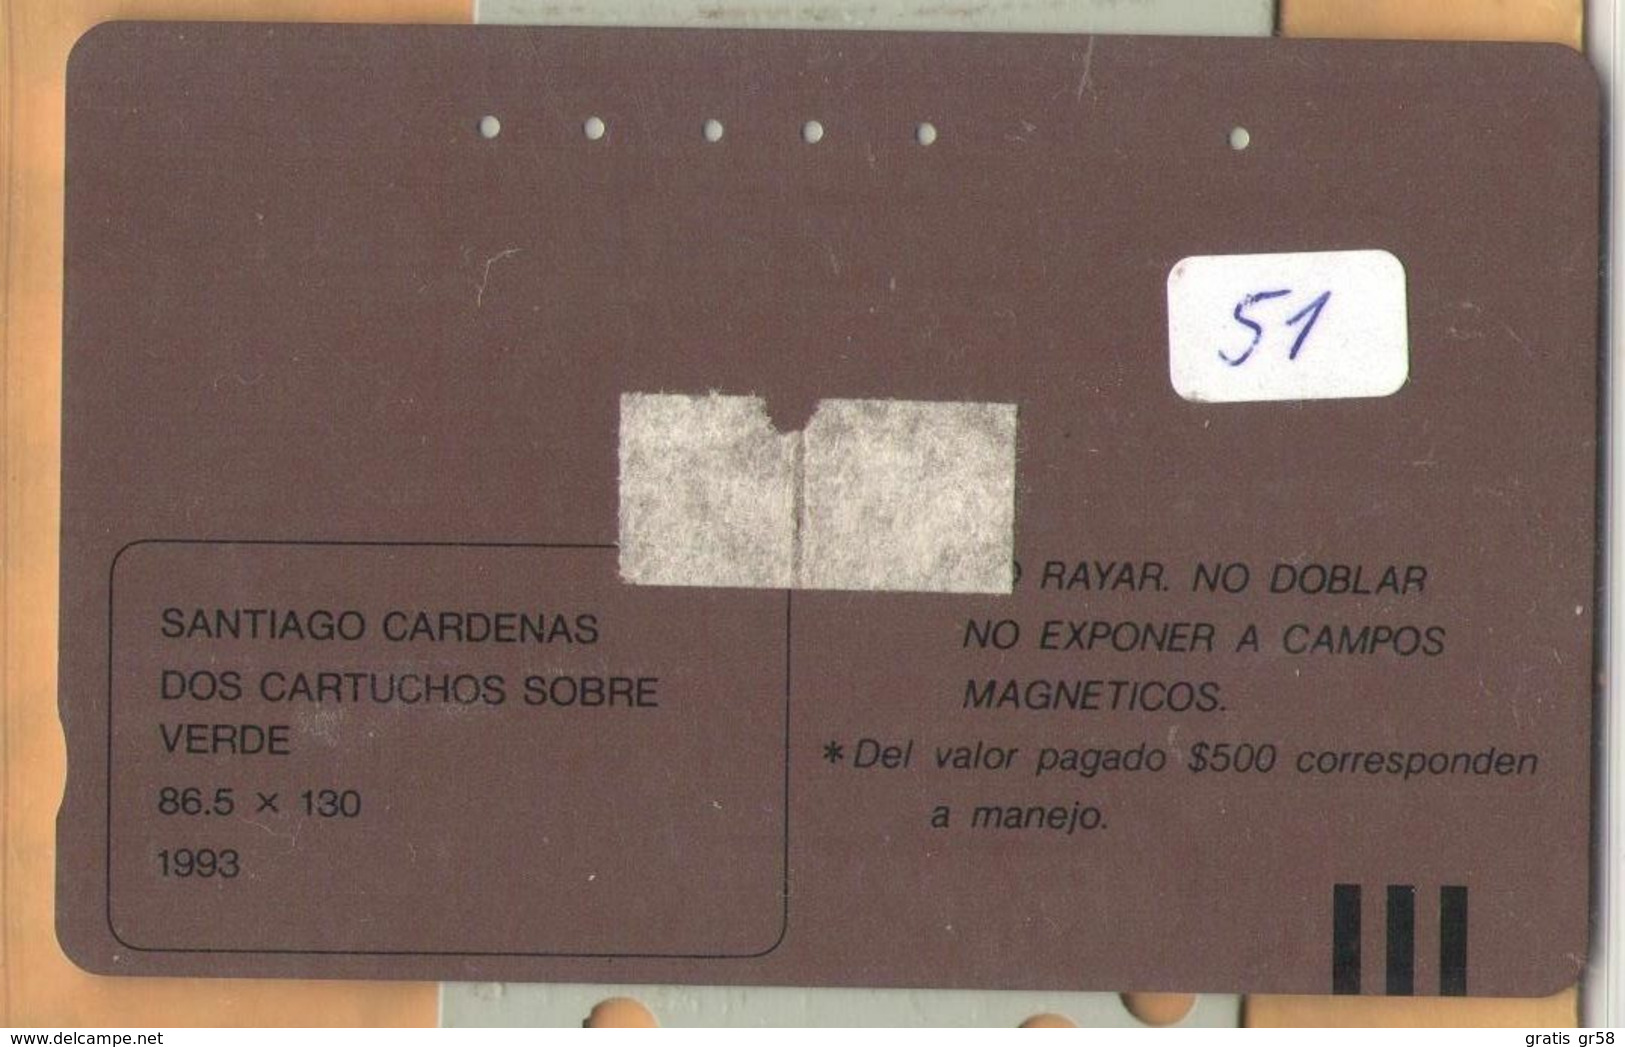 Colombia - CO-MT-51, Tamura, Dos Cartuchos Sobre Verde, Santiago Cardenas, Art, 5,500 $, 10.000ex, Used - Kolumbien